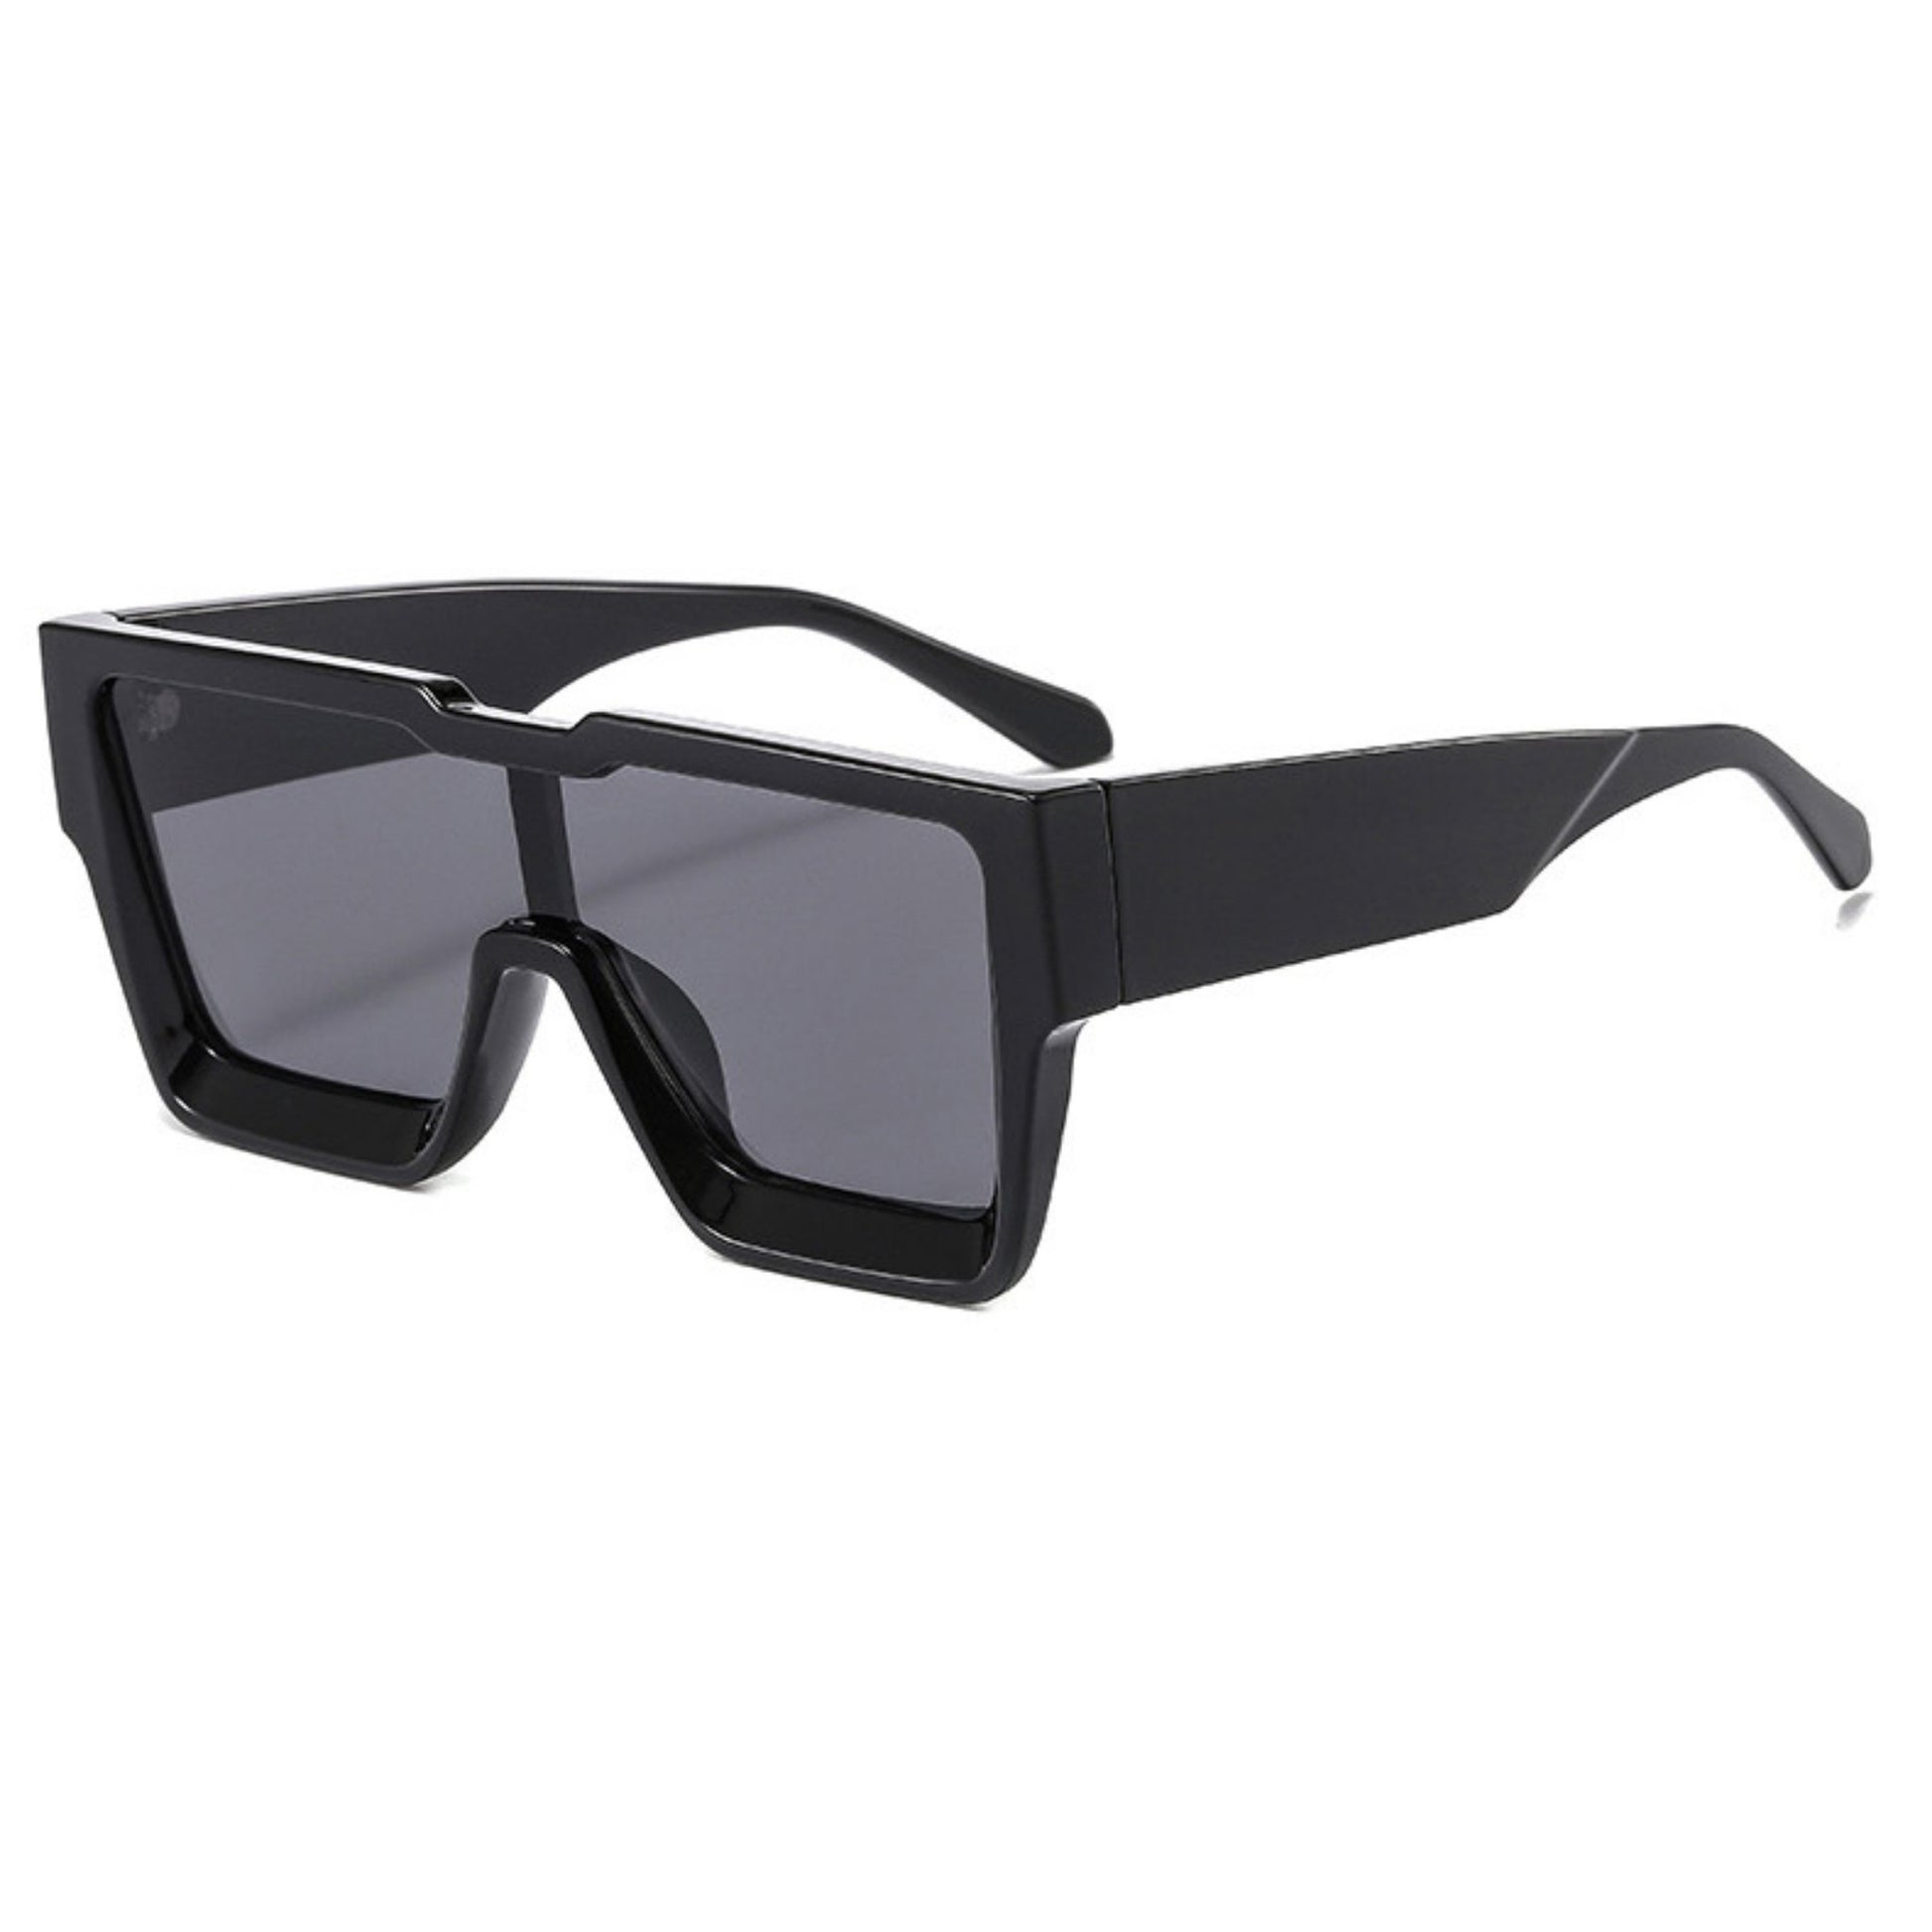 Γυαλιά ηλίου Toronto (Μάσκα) από την Exposure Sunglasses με προστασία UV400 με μαύρο σκελετό και μαύρο φακό.Πλαινή όψη.